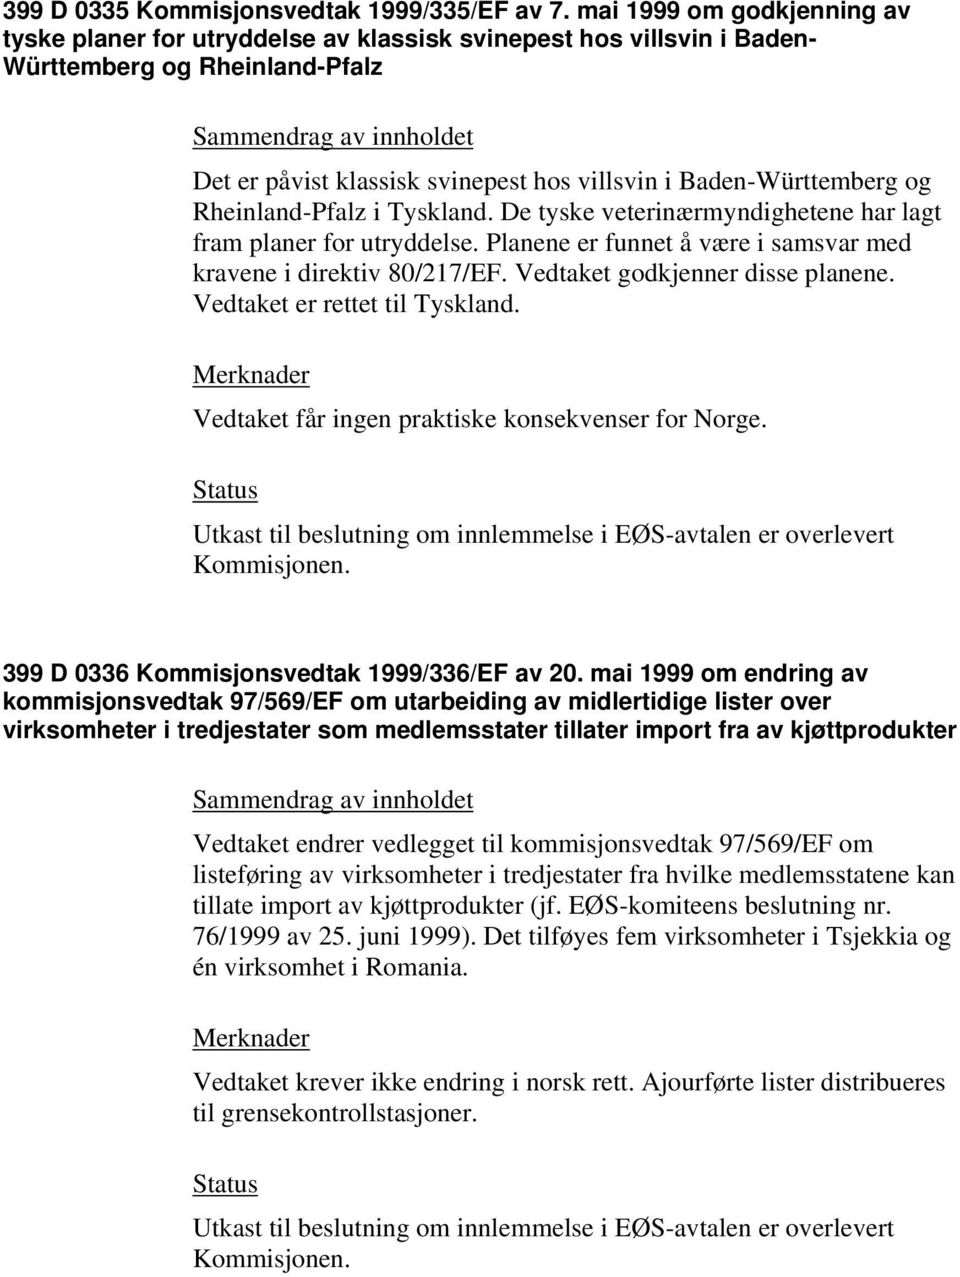 Rheinland-Pfalz i Tyskland. De tyske veterinærmyndighetene har lagt fram planer for utryddelse. Planene er funnet å være i samsvar med kravene i direktiv 80/217/EF. Vedtaket godkjenner disse planene.